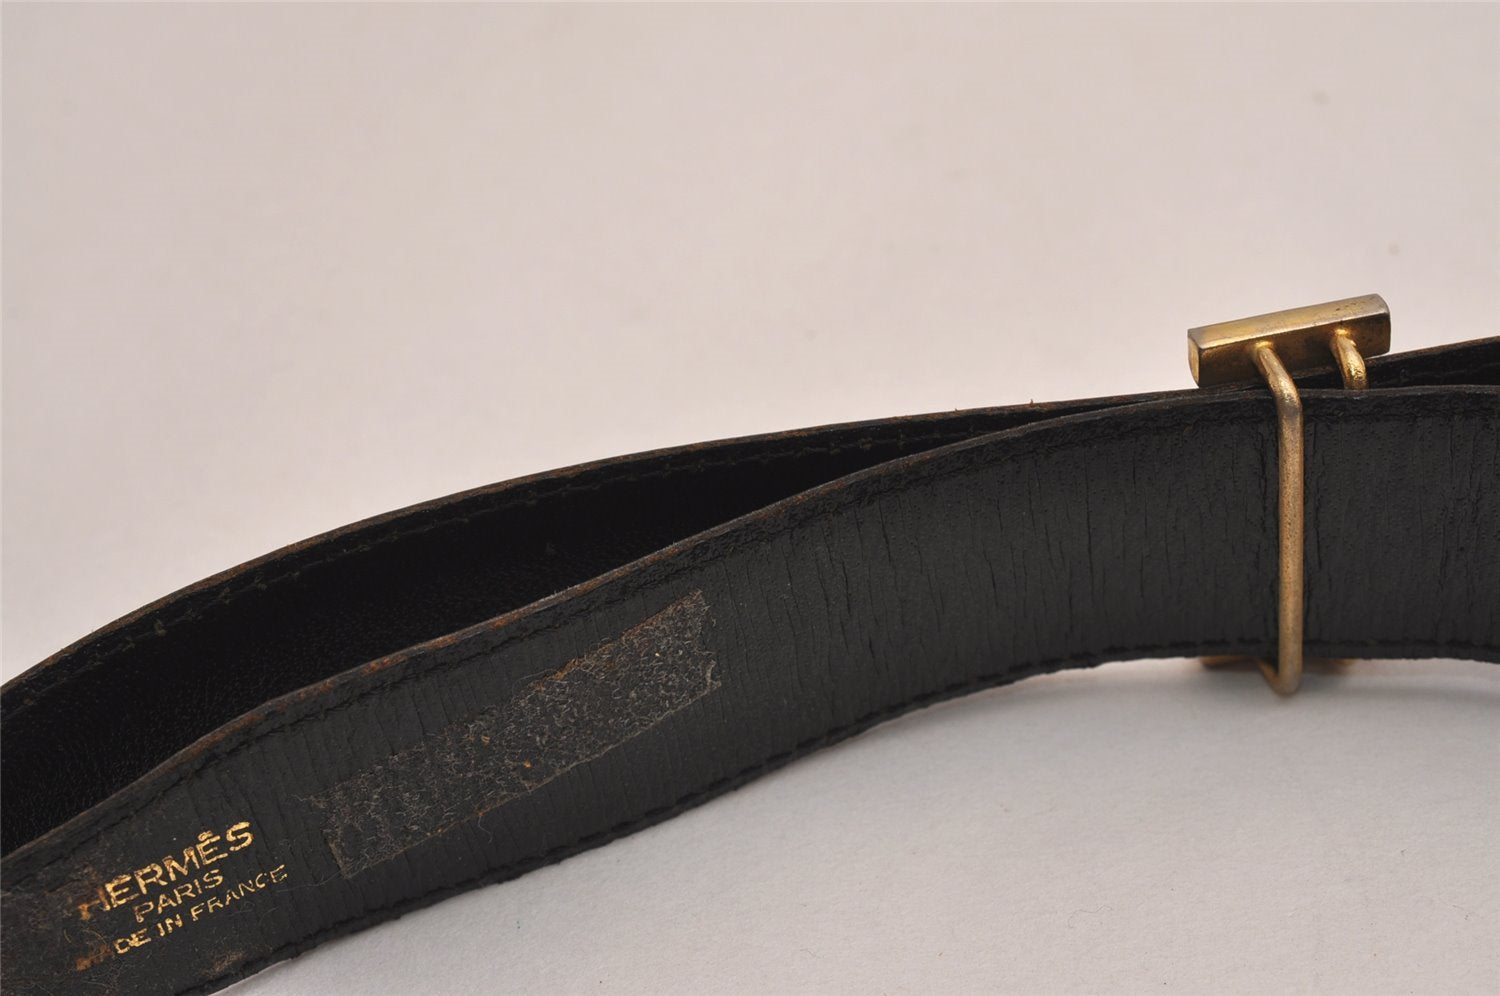 Authentic HERMES Constance Enamel Leather Belt Size 95cm 37.4